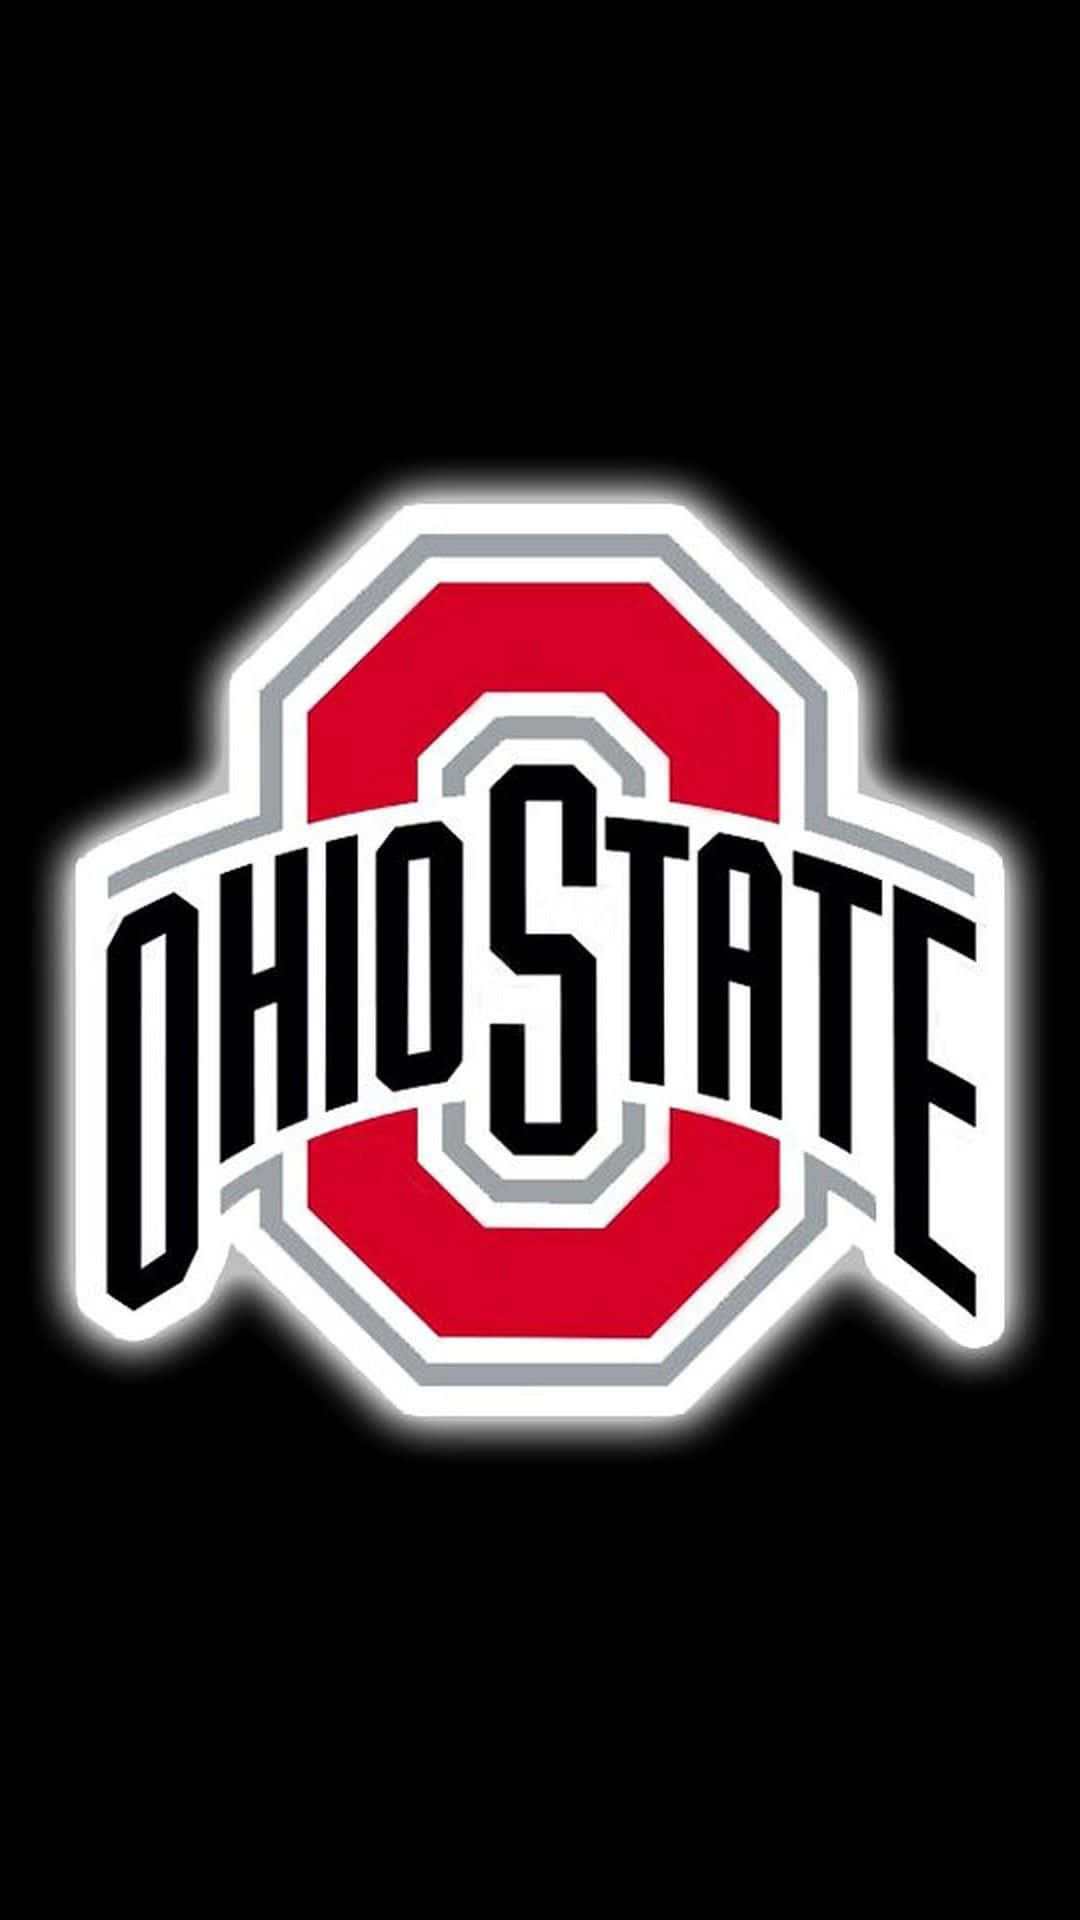 Logotipode Ohio State En Rojo Con Fondo Negro. Fondo de pantalla